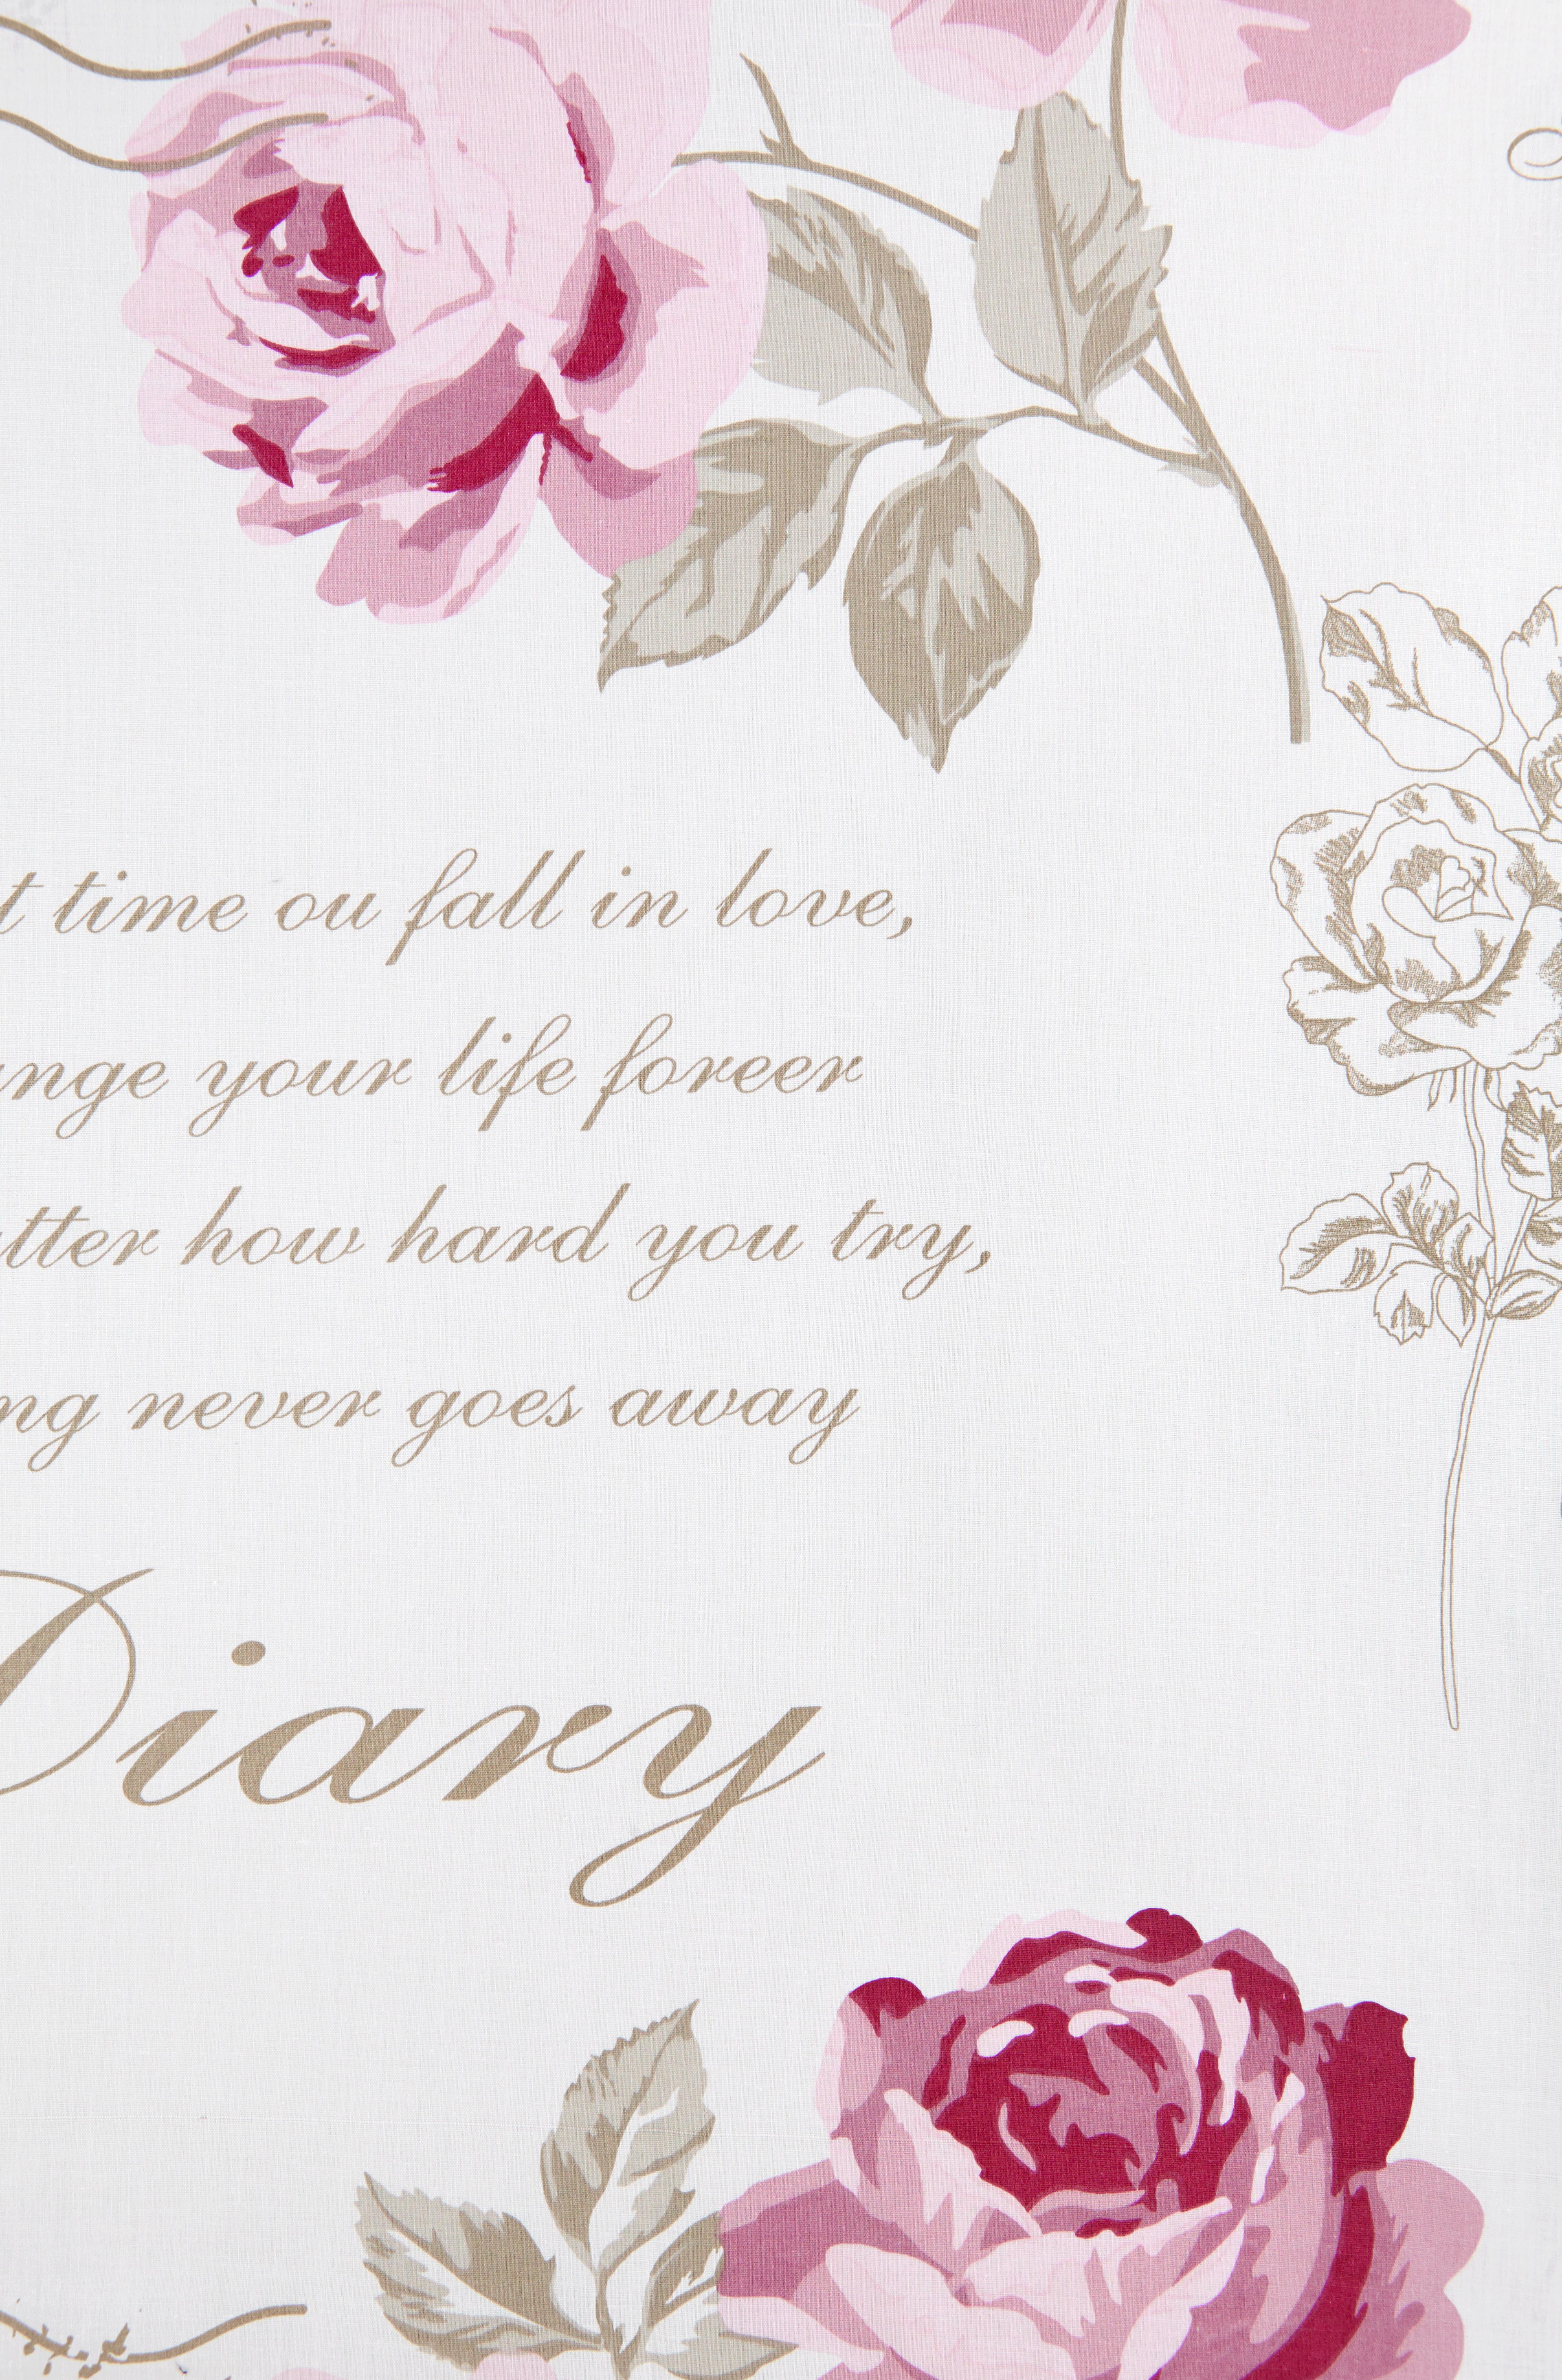 Denní Deka Diary Rose, 220/240cm - bílá/růžová, Romantický / Rustikální, textil (220/240cm) - Modern Living